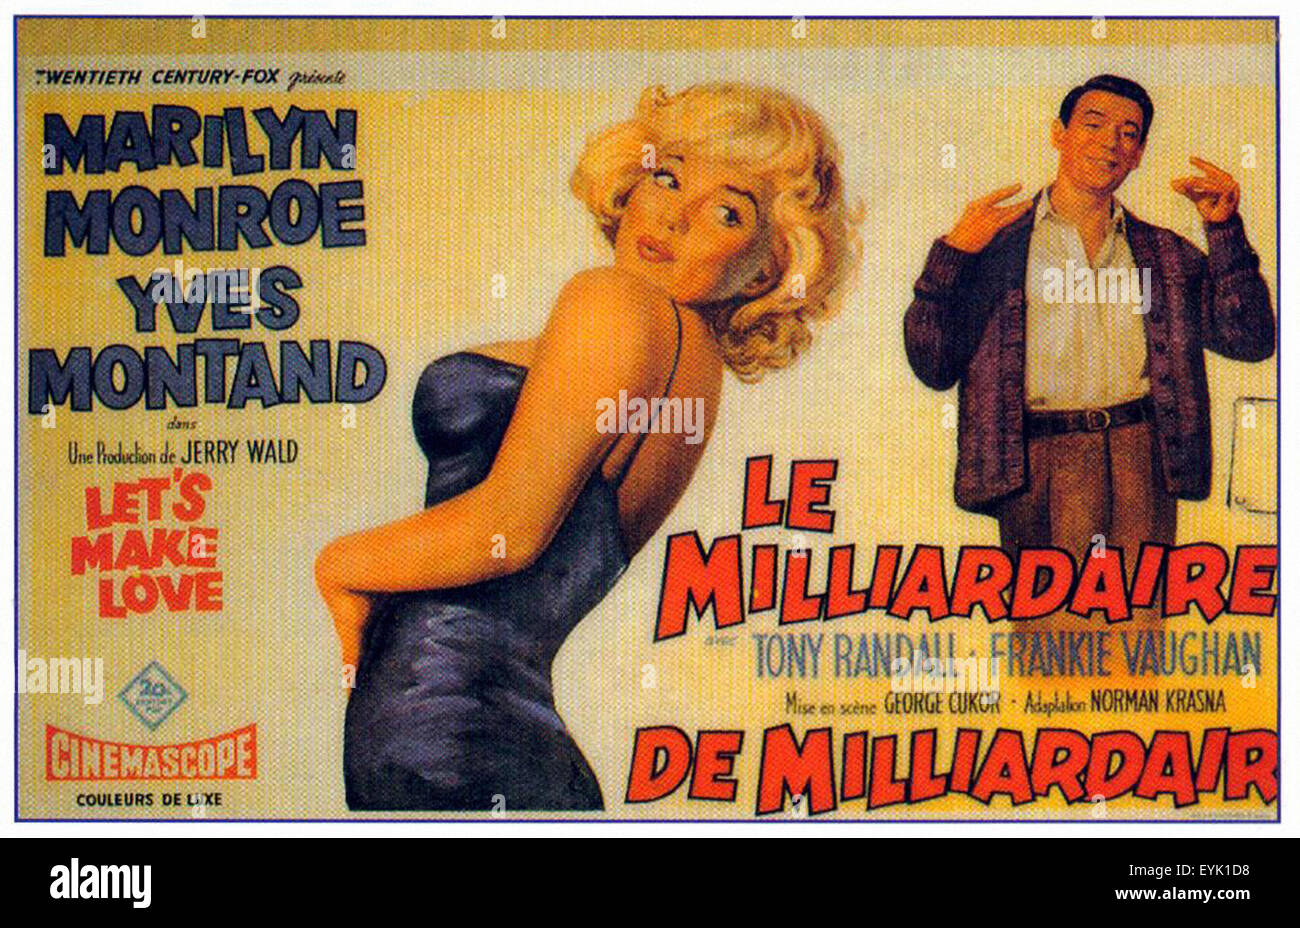 Cerchiamo di fare l'amore - Marilyn Monroe - Yves Montand - Francese poster del filmato Foto Stock